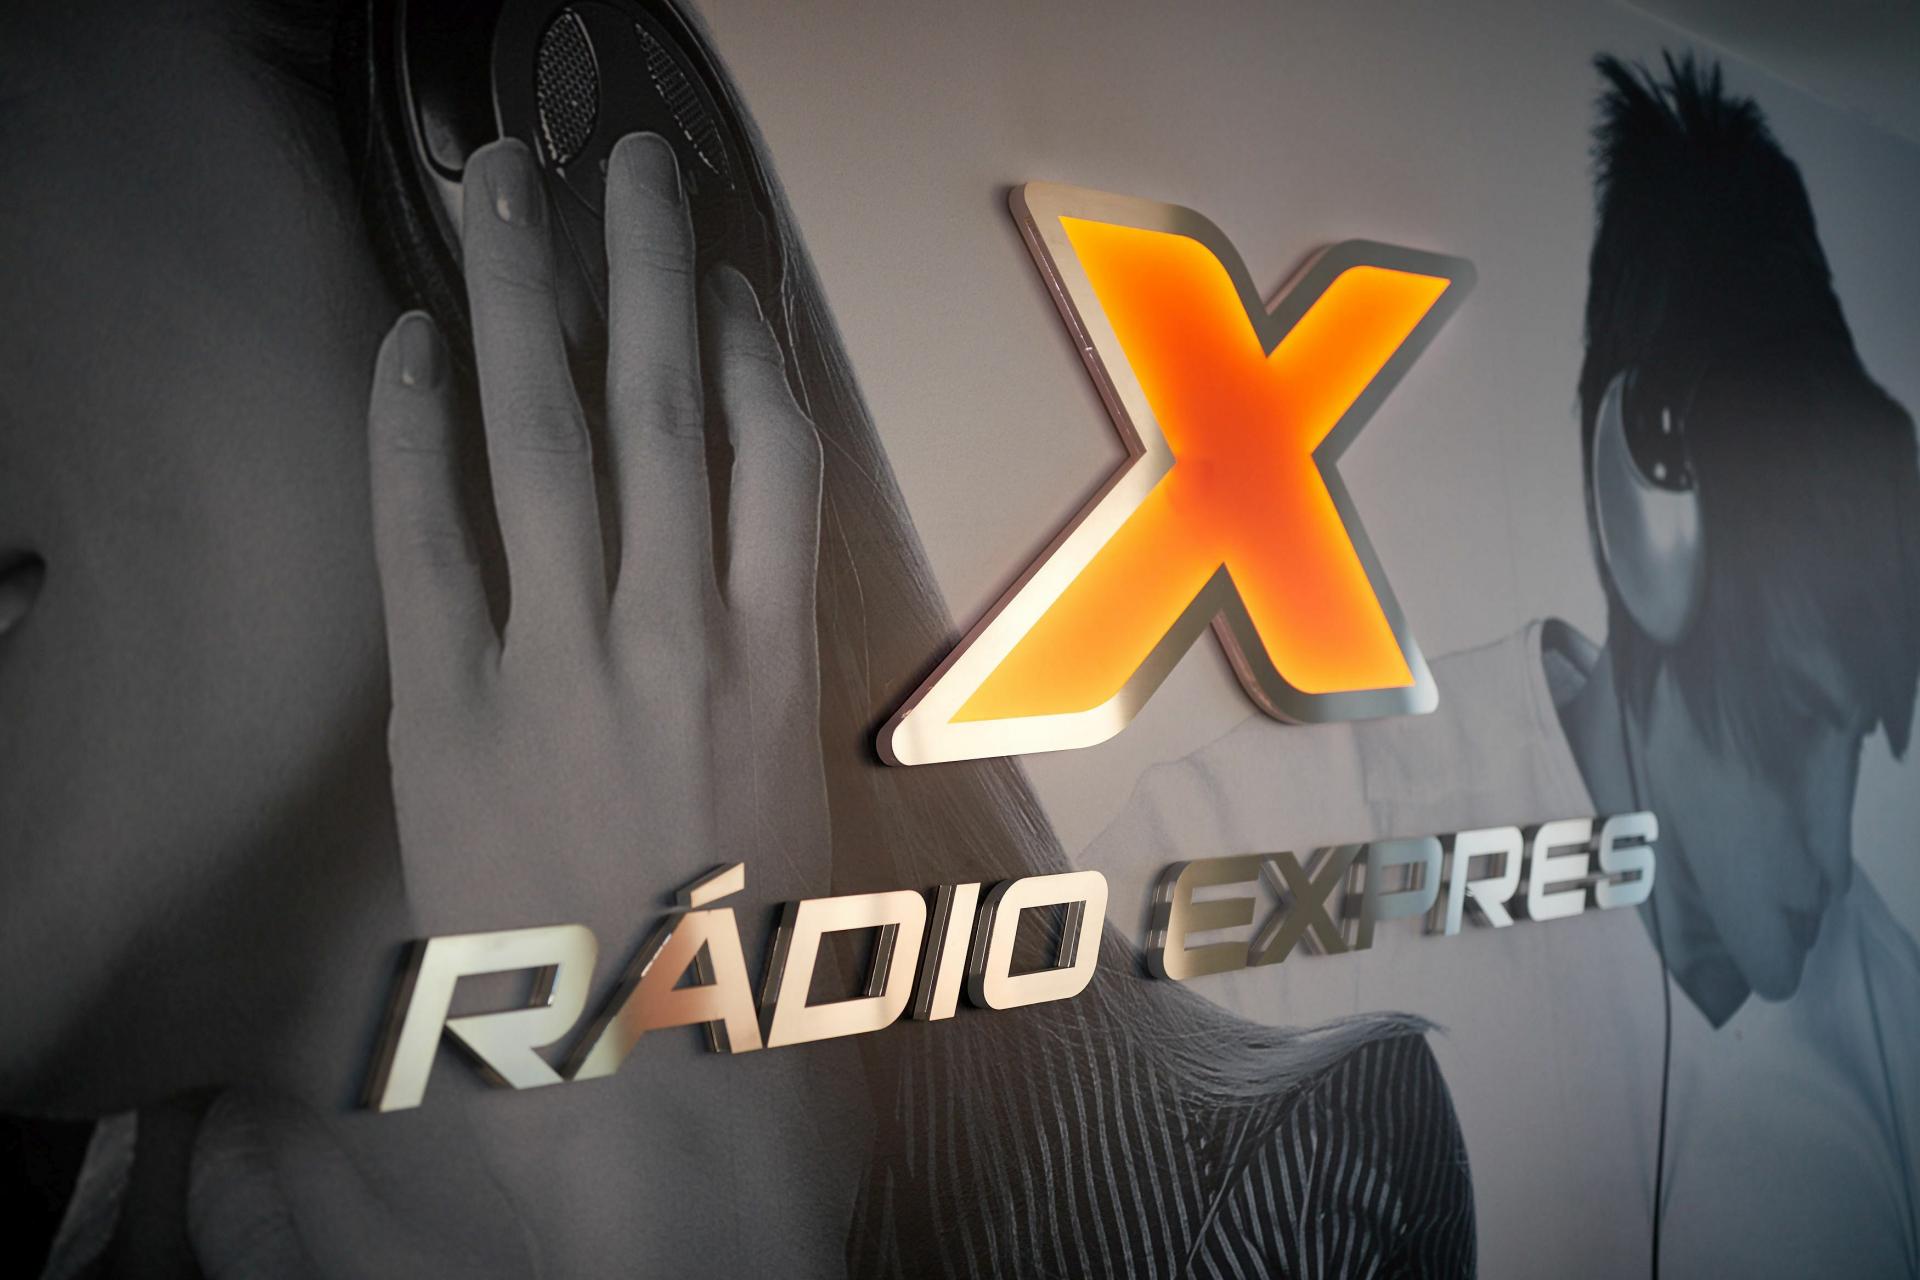 Najpočúvanejším rádiom je Expres. Má aj najväčší podiel na trhu, ukázal prieskum